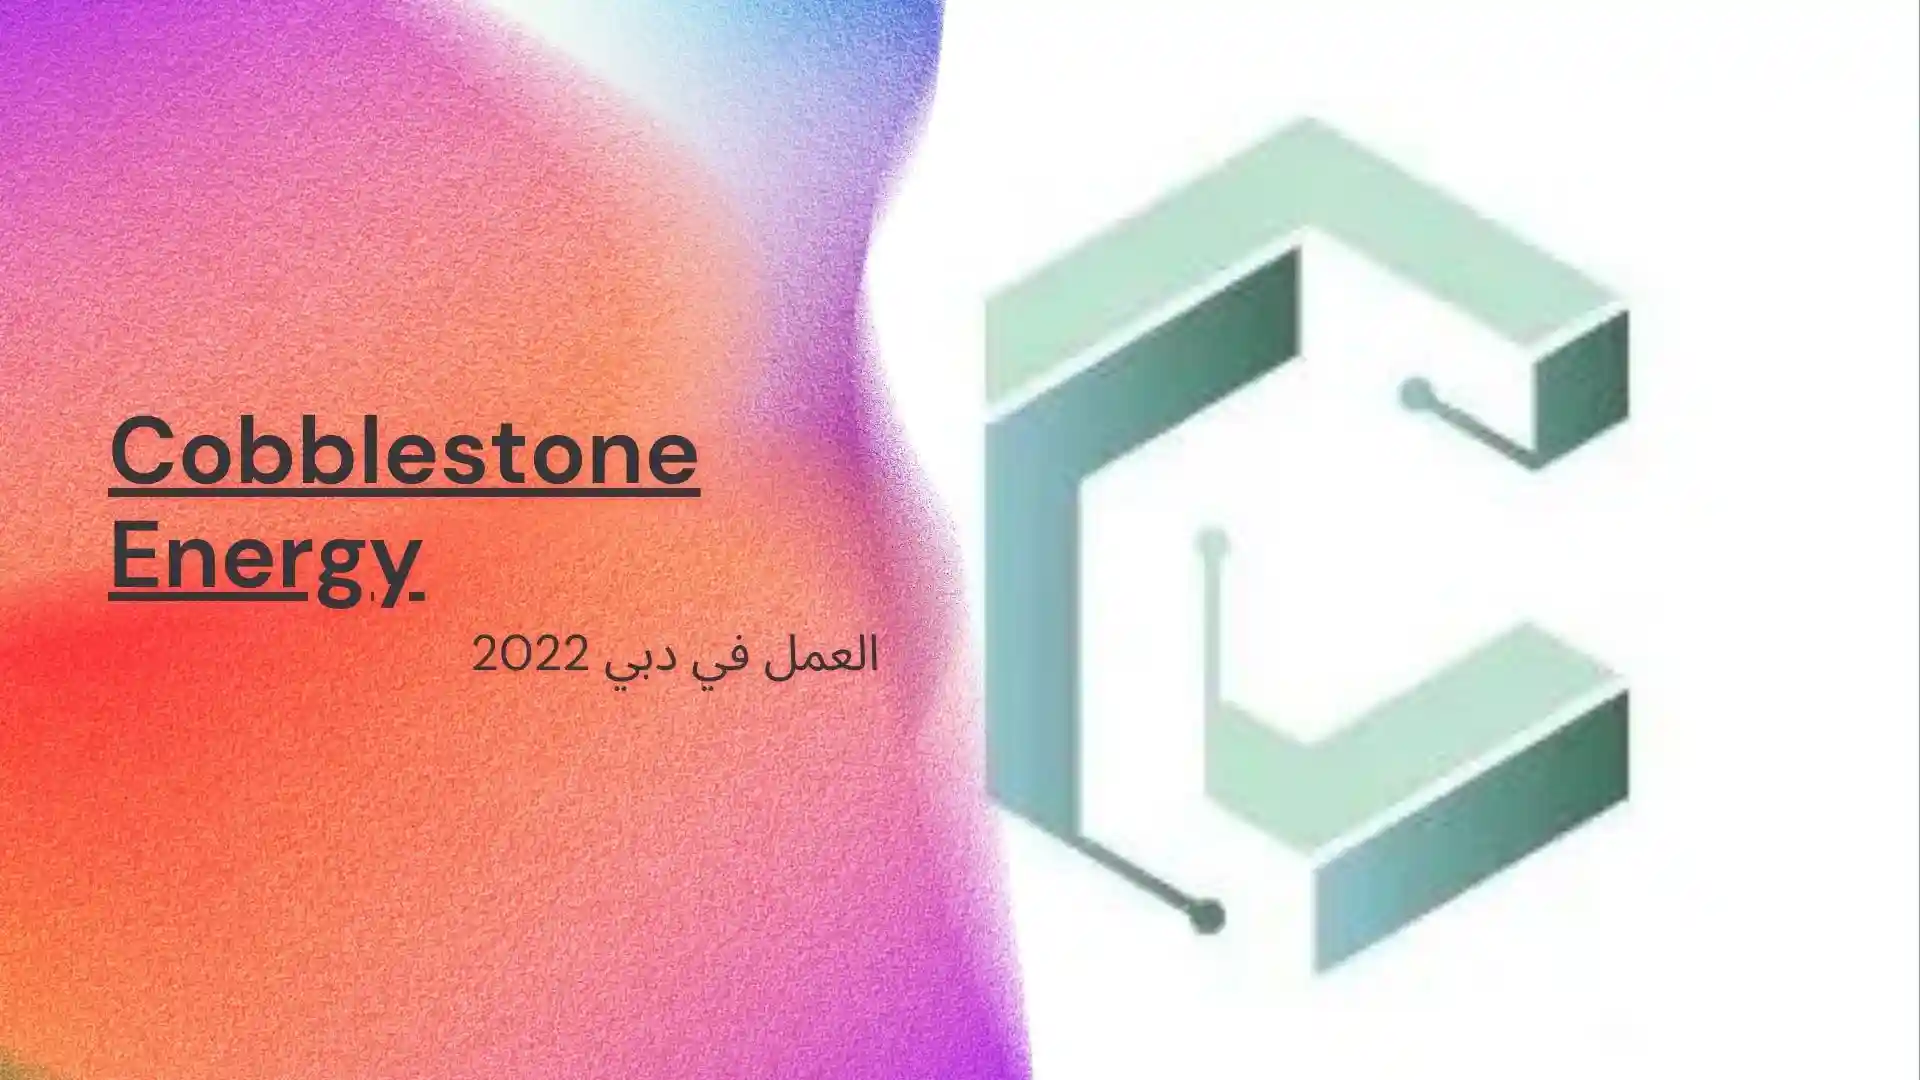 العمل في دبي 2022 .. توظف شركة Cobblestone Energy تجار مبتدئين